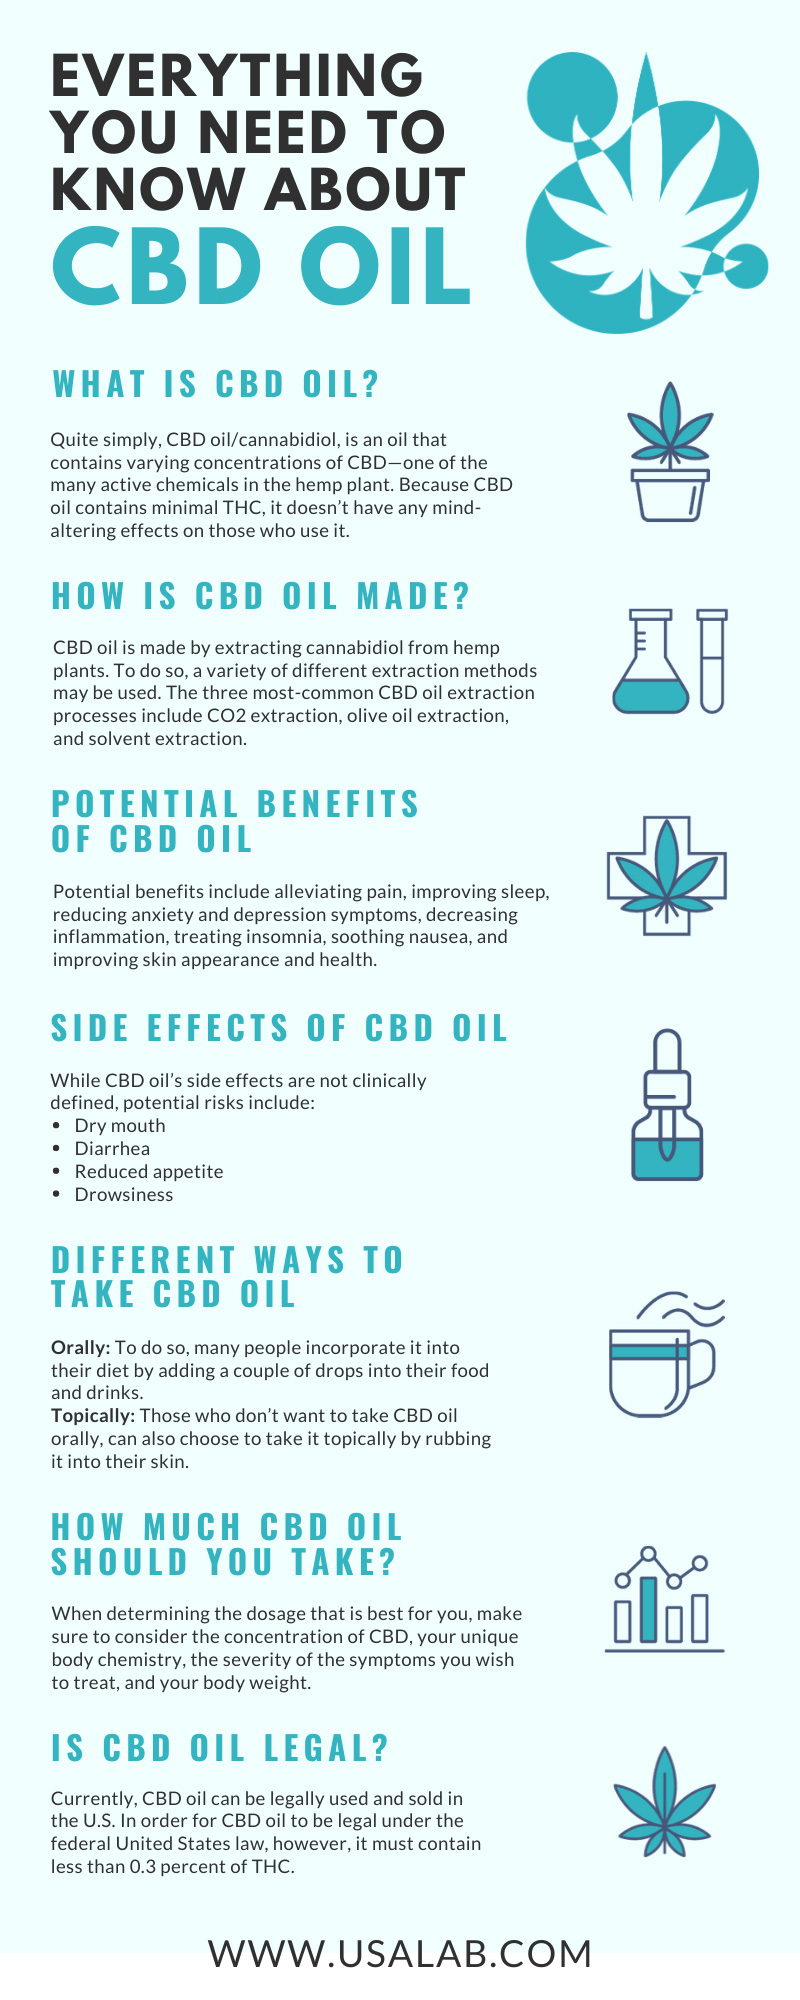 CBD Oil Guide